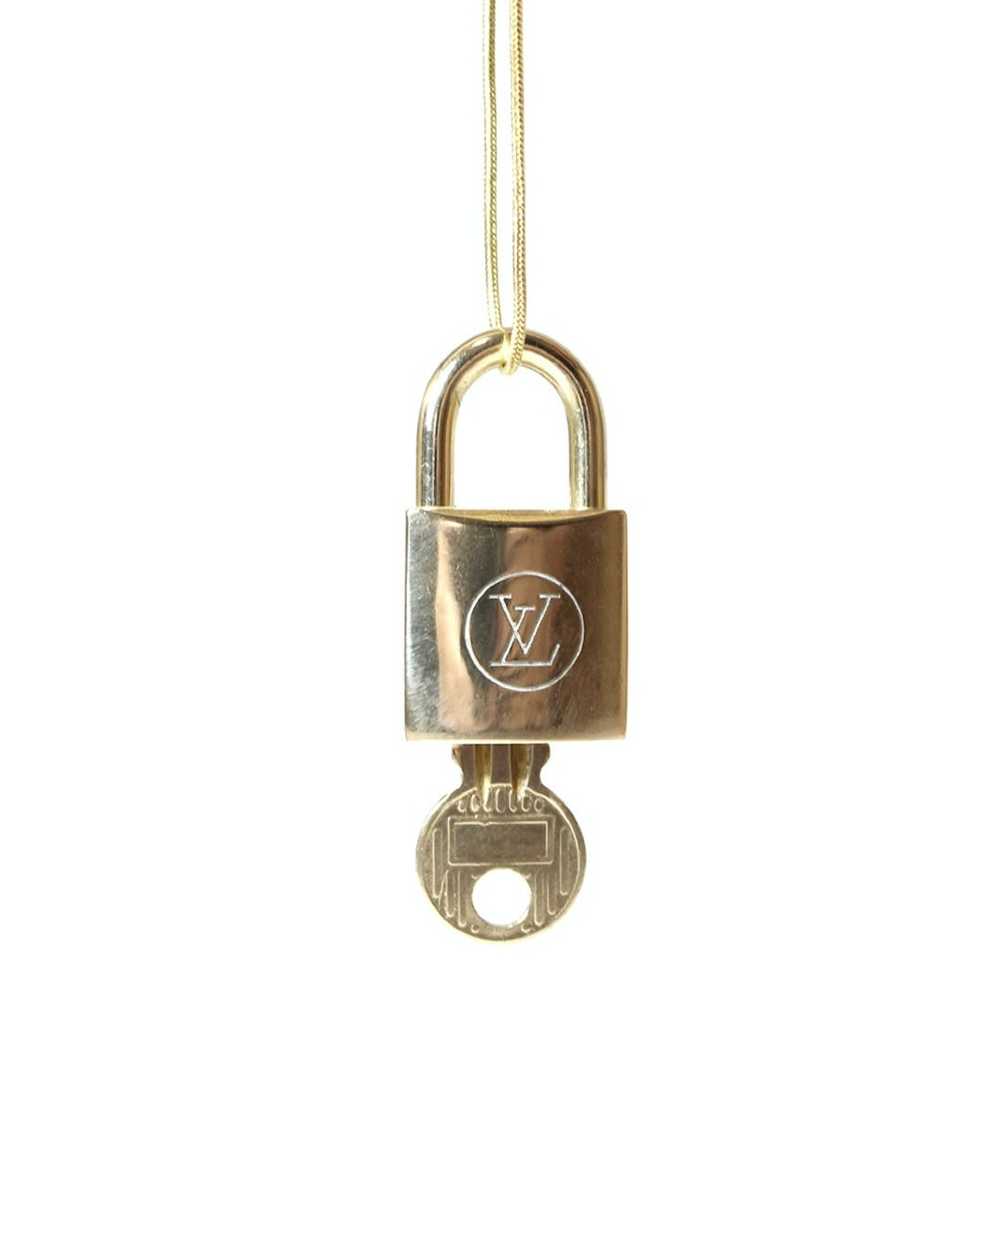 Louis Vuitton Lock Chain Necklace - Gem